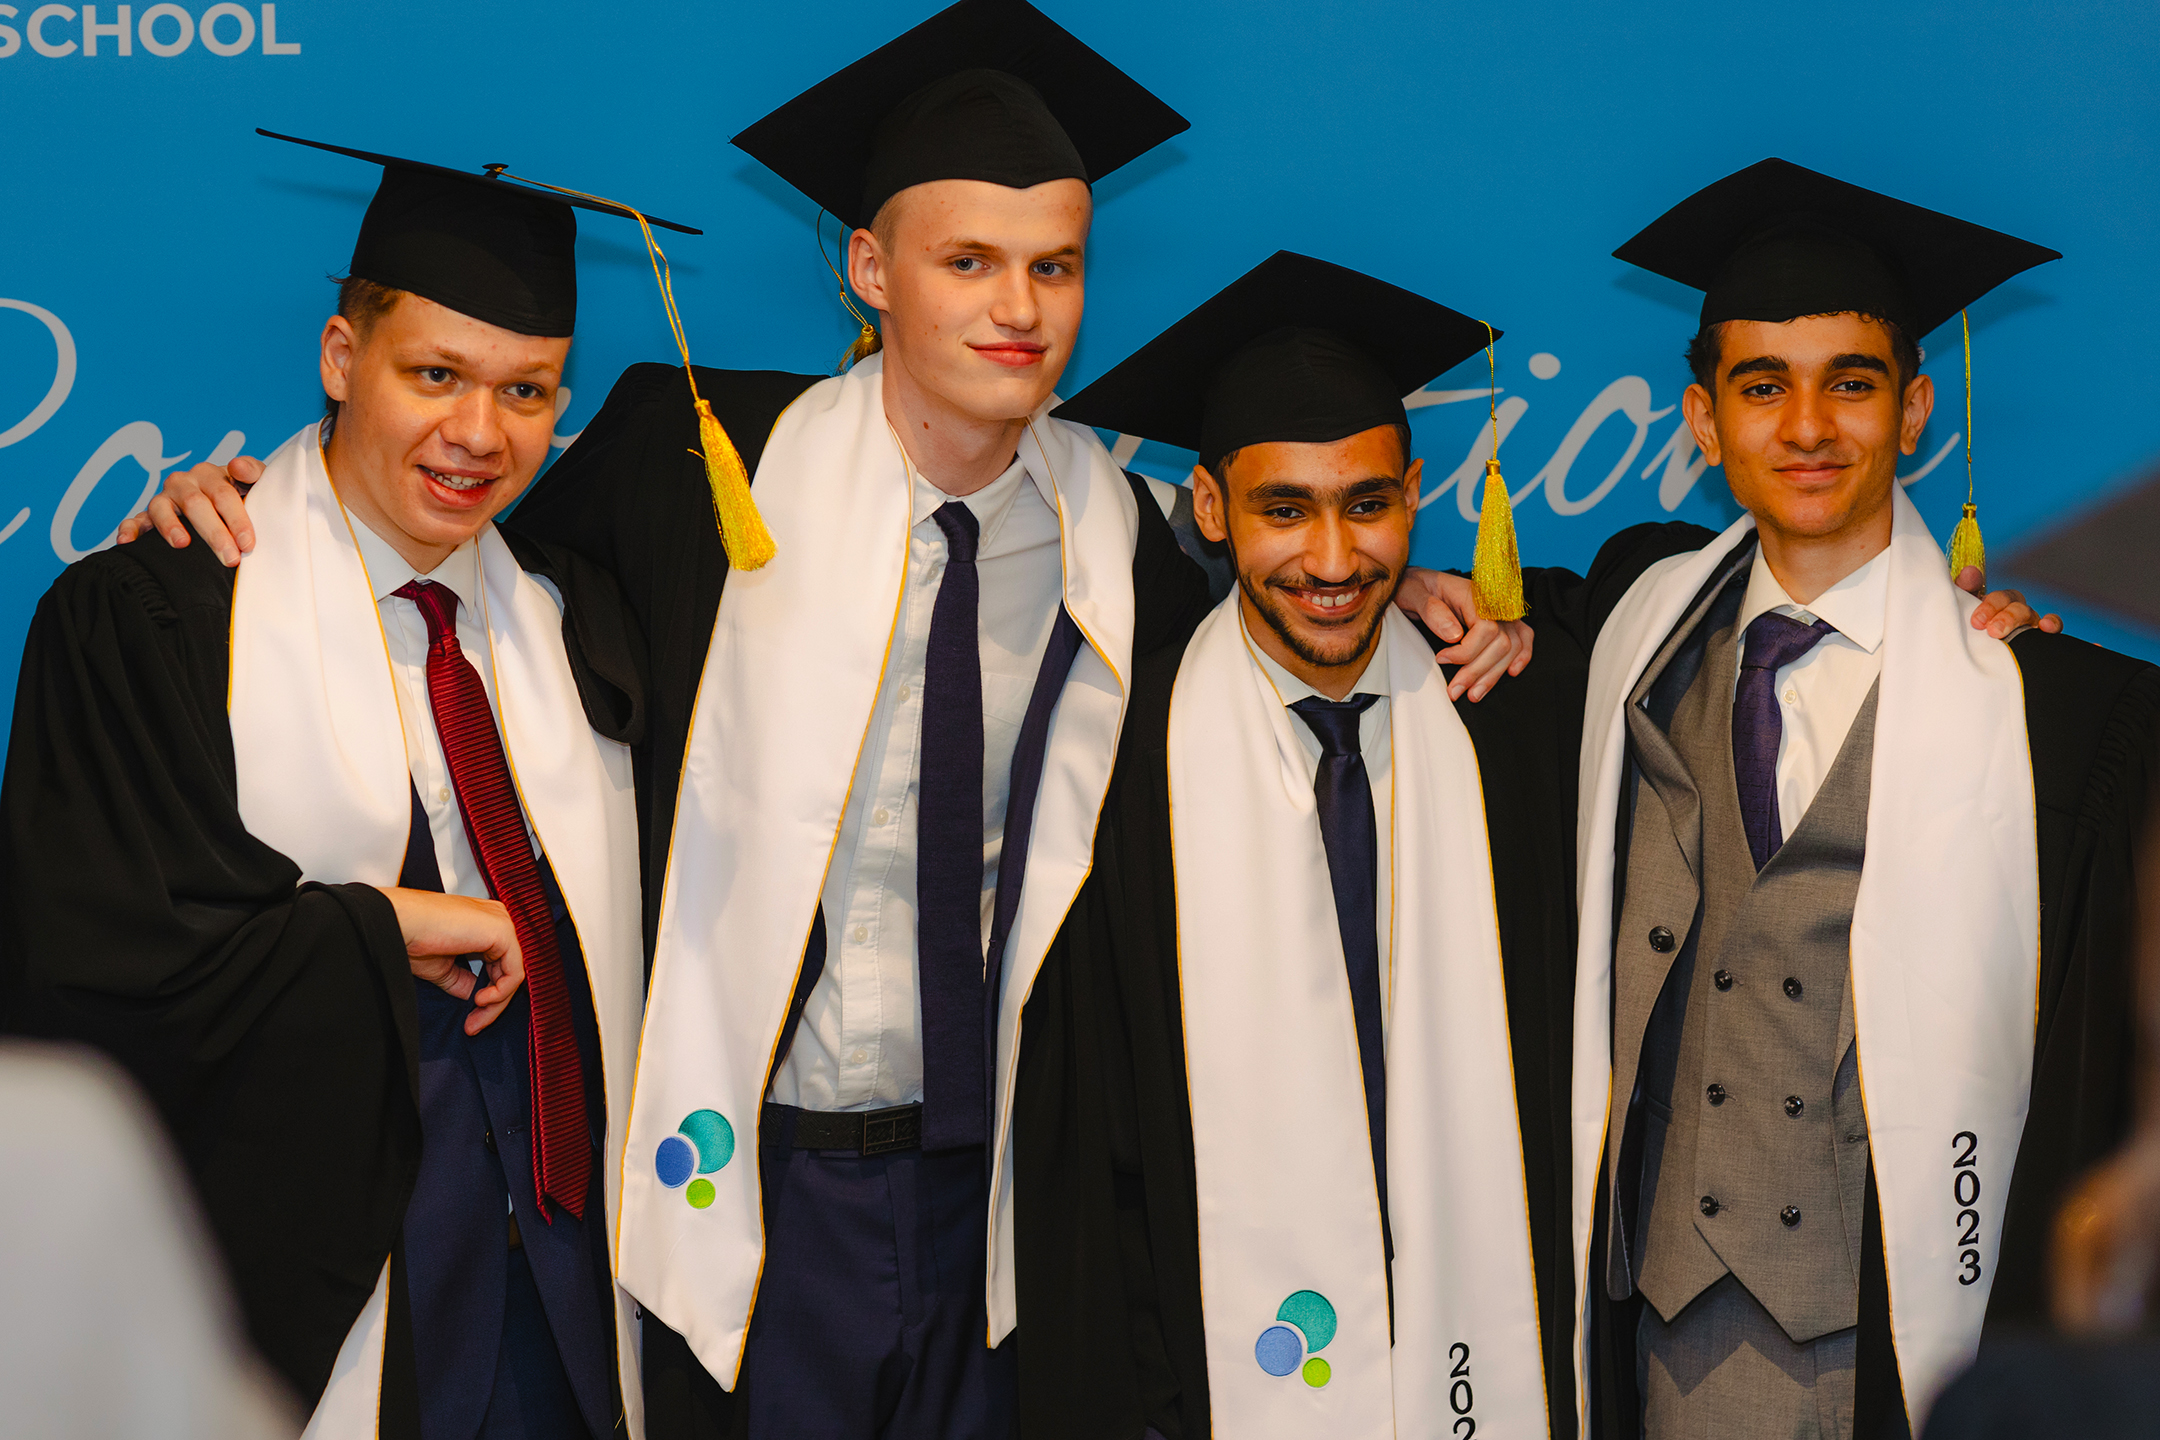 فخورون بتخريج الشباب من مدرسة فيرجرين الدولية في دبي احتفالاً بنجاحاتهم في البكالوريا الدولية في عام 2023